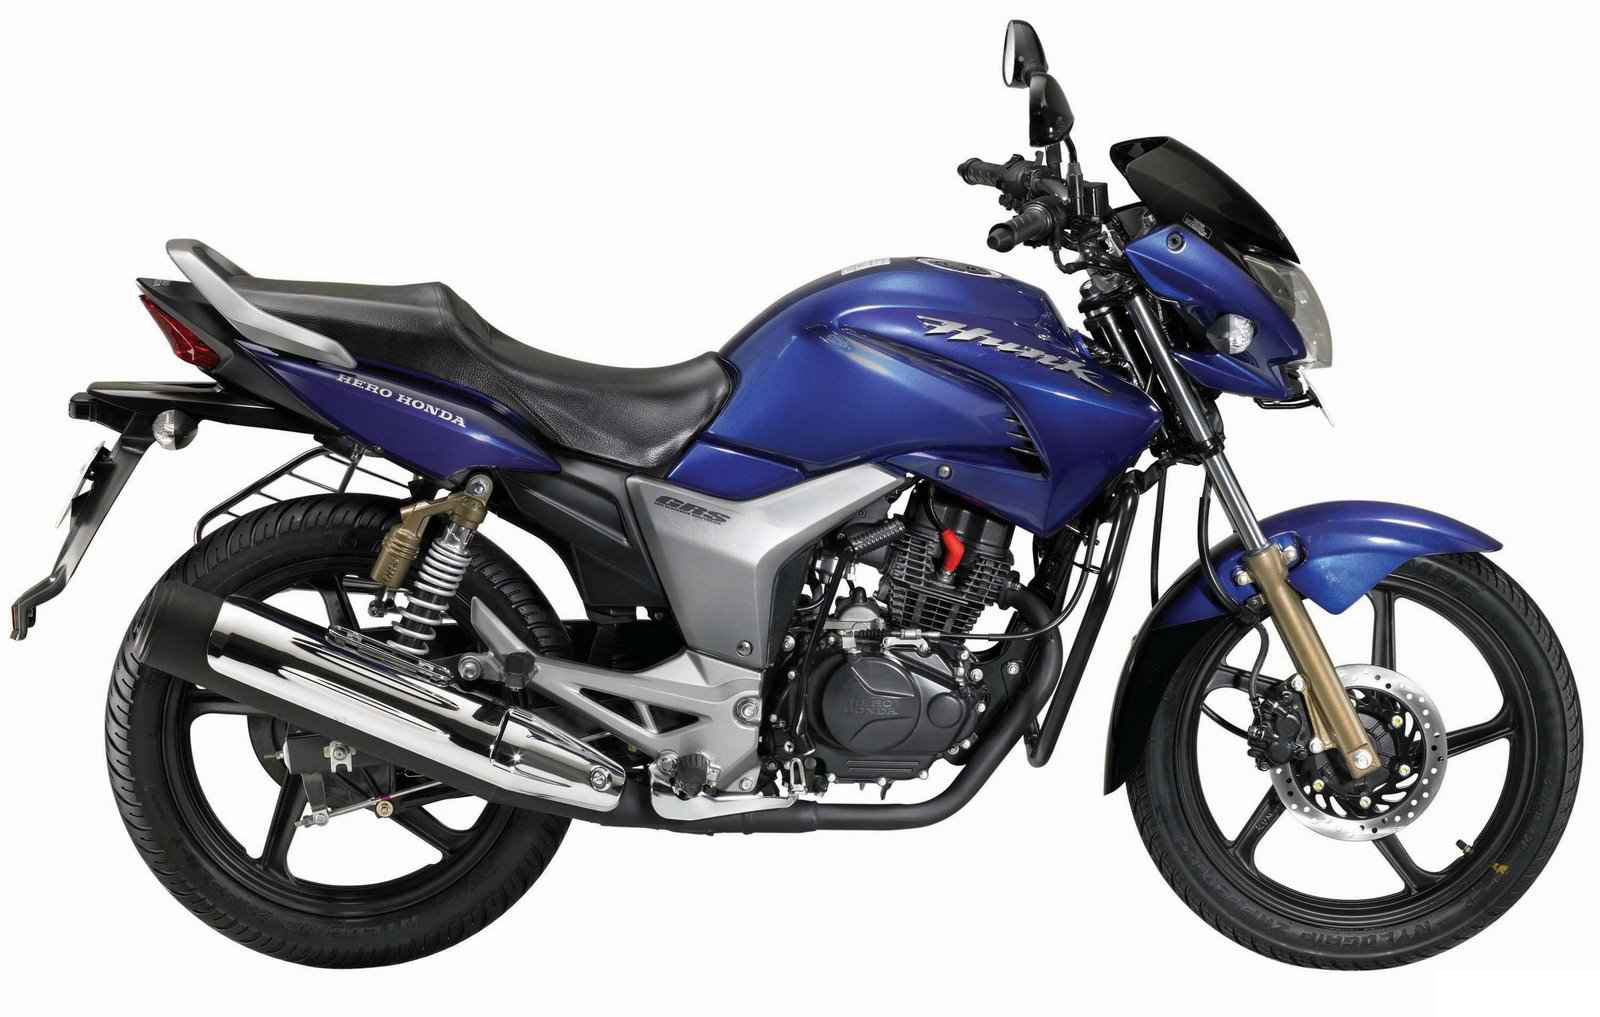 Motorcycle of hero honda